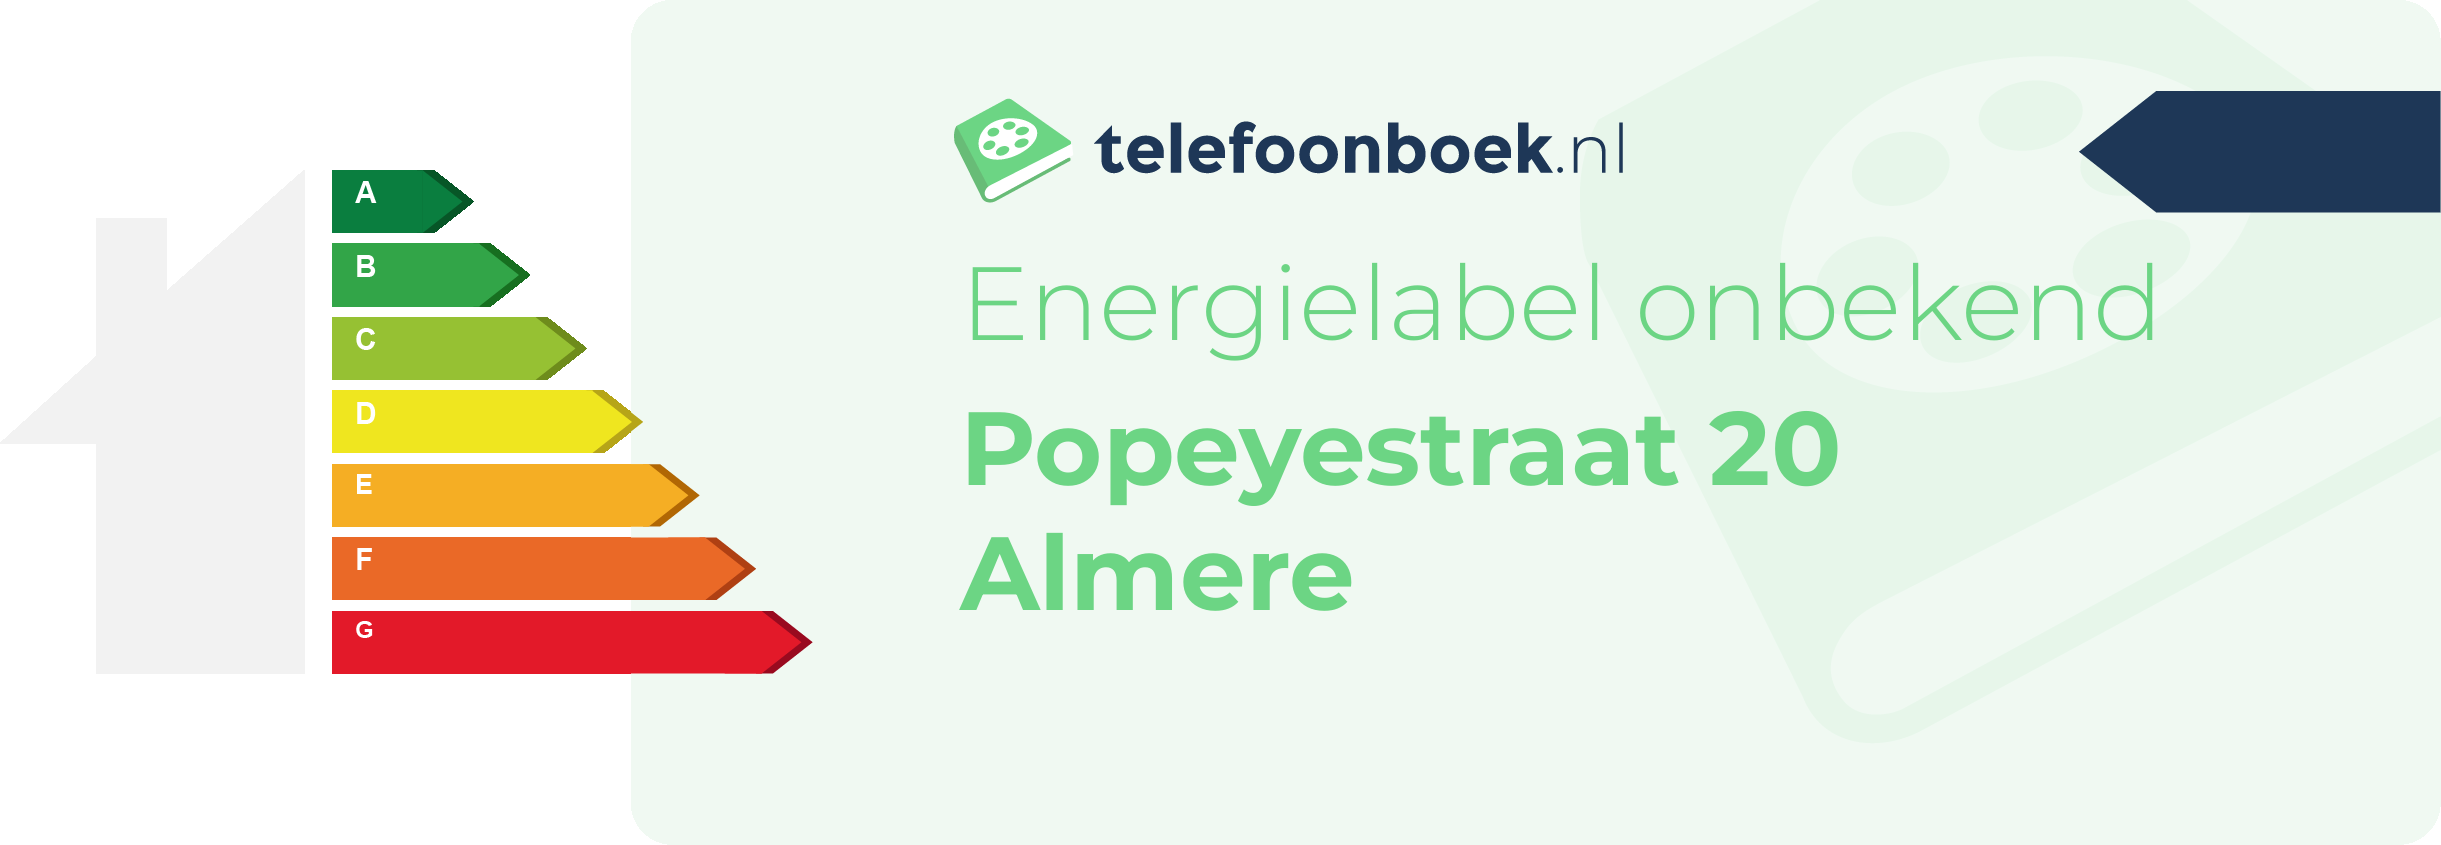 Energielabel Popeyestraat 20 Almere